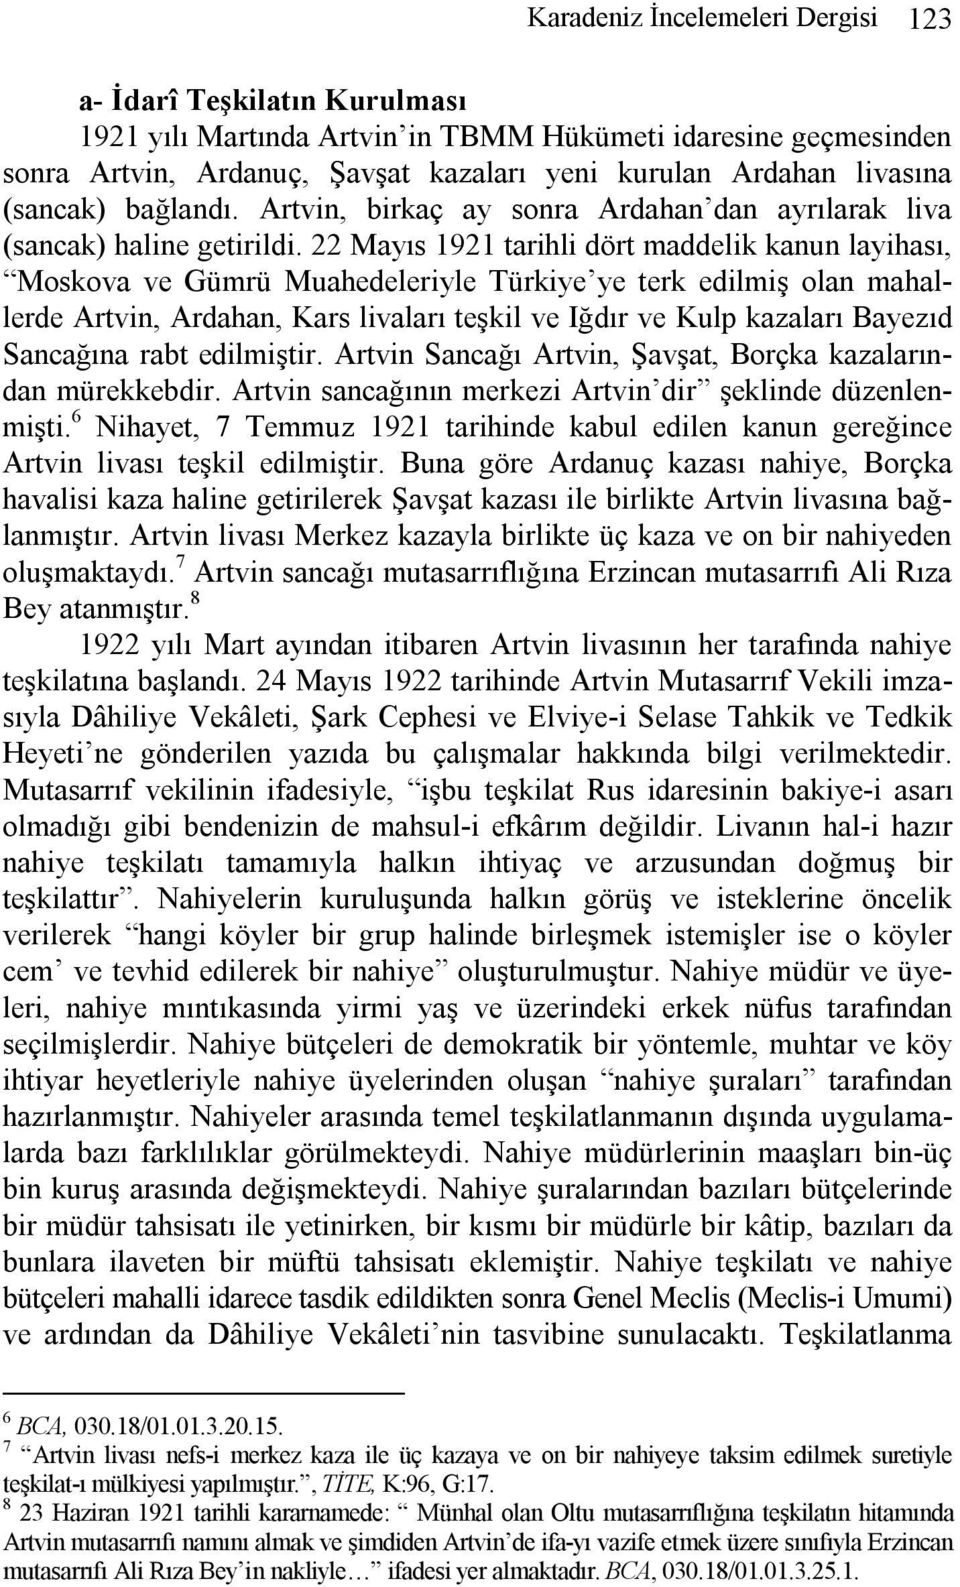 22 Mayıs 1921 tarihli dört maddelik kanun layihası, Moskova ve Gümrü Muahedeleriyle Türkiye ye terk edilmiş olan mahallerde Artvin, Ardahan, Kars livaları teşkil ve Iğdır ve Kulp kazaları Bayezıd